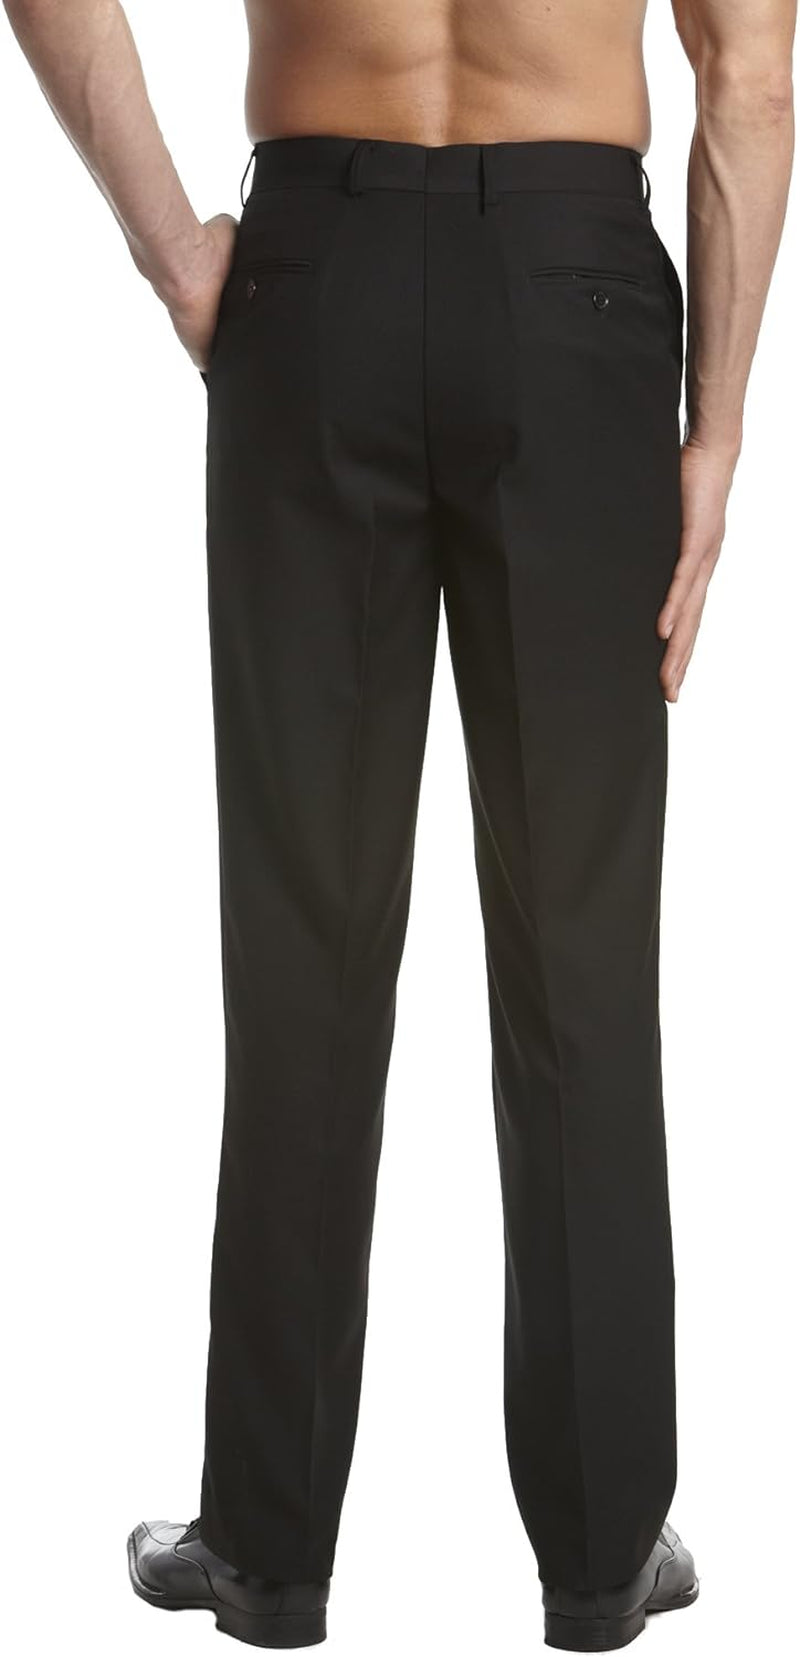 Men'S Dress Pants Trousers Flat Front Slacks Solid Black Color